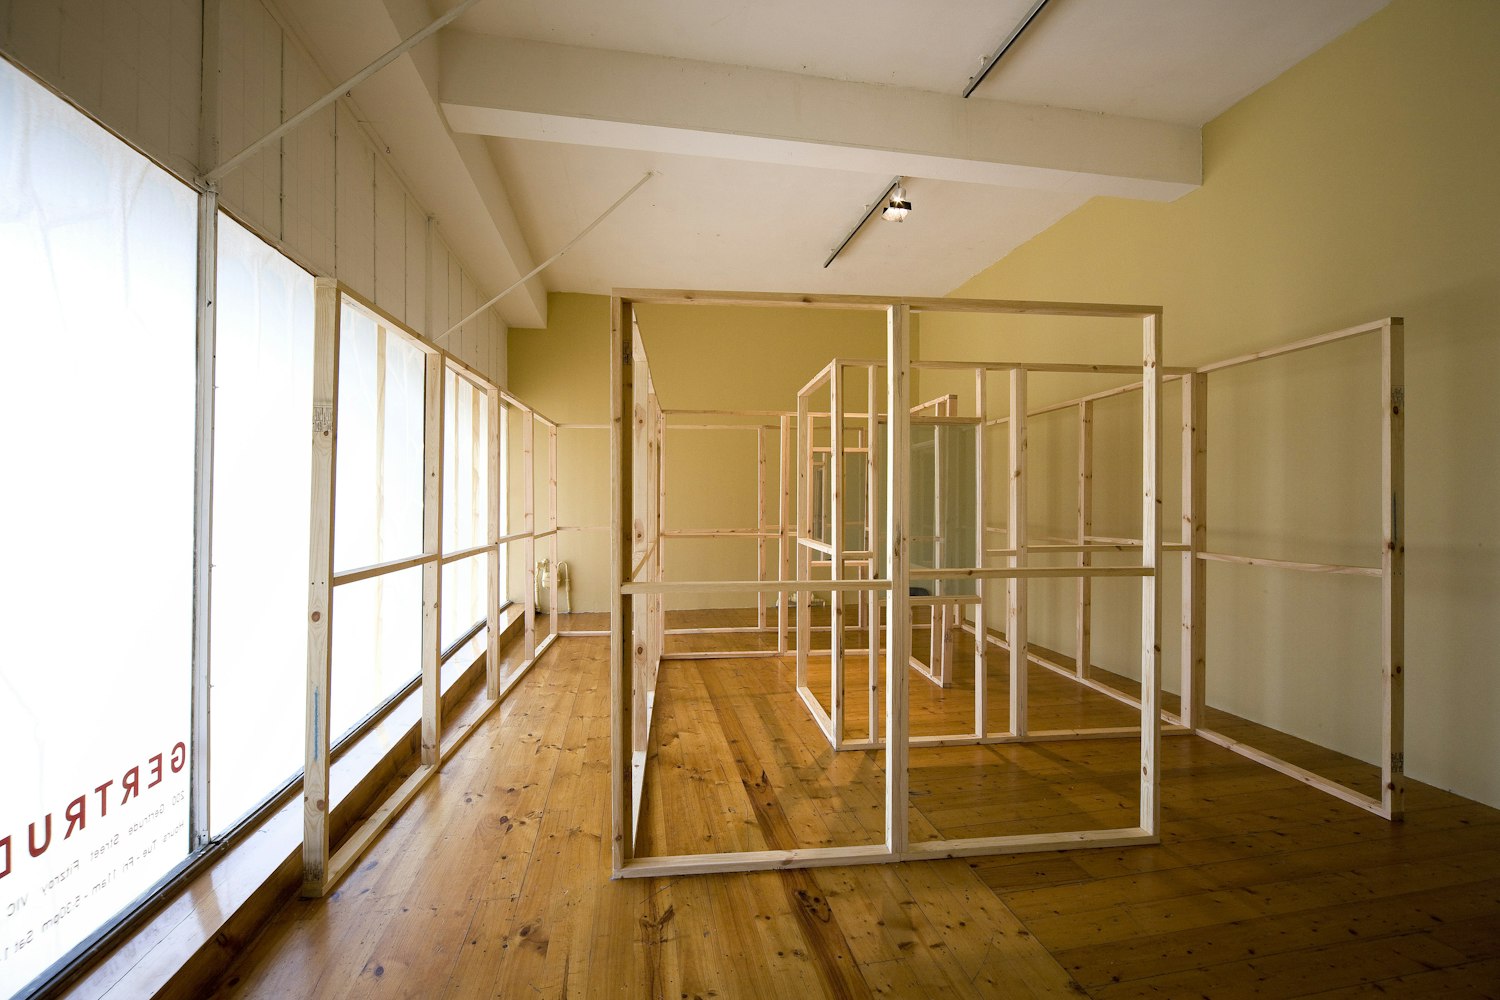 William Seeto, De Capo Senza Repetizione, 2008, installation at Gertrude Contemporary. Image courtesy of the Gertrude Contemporary archives.